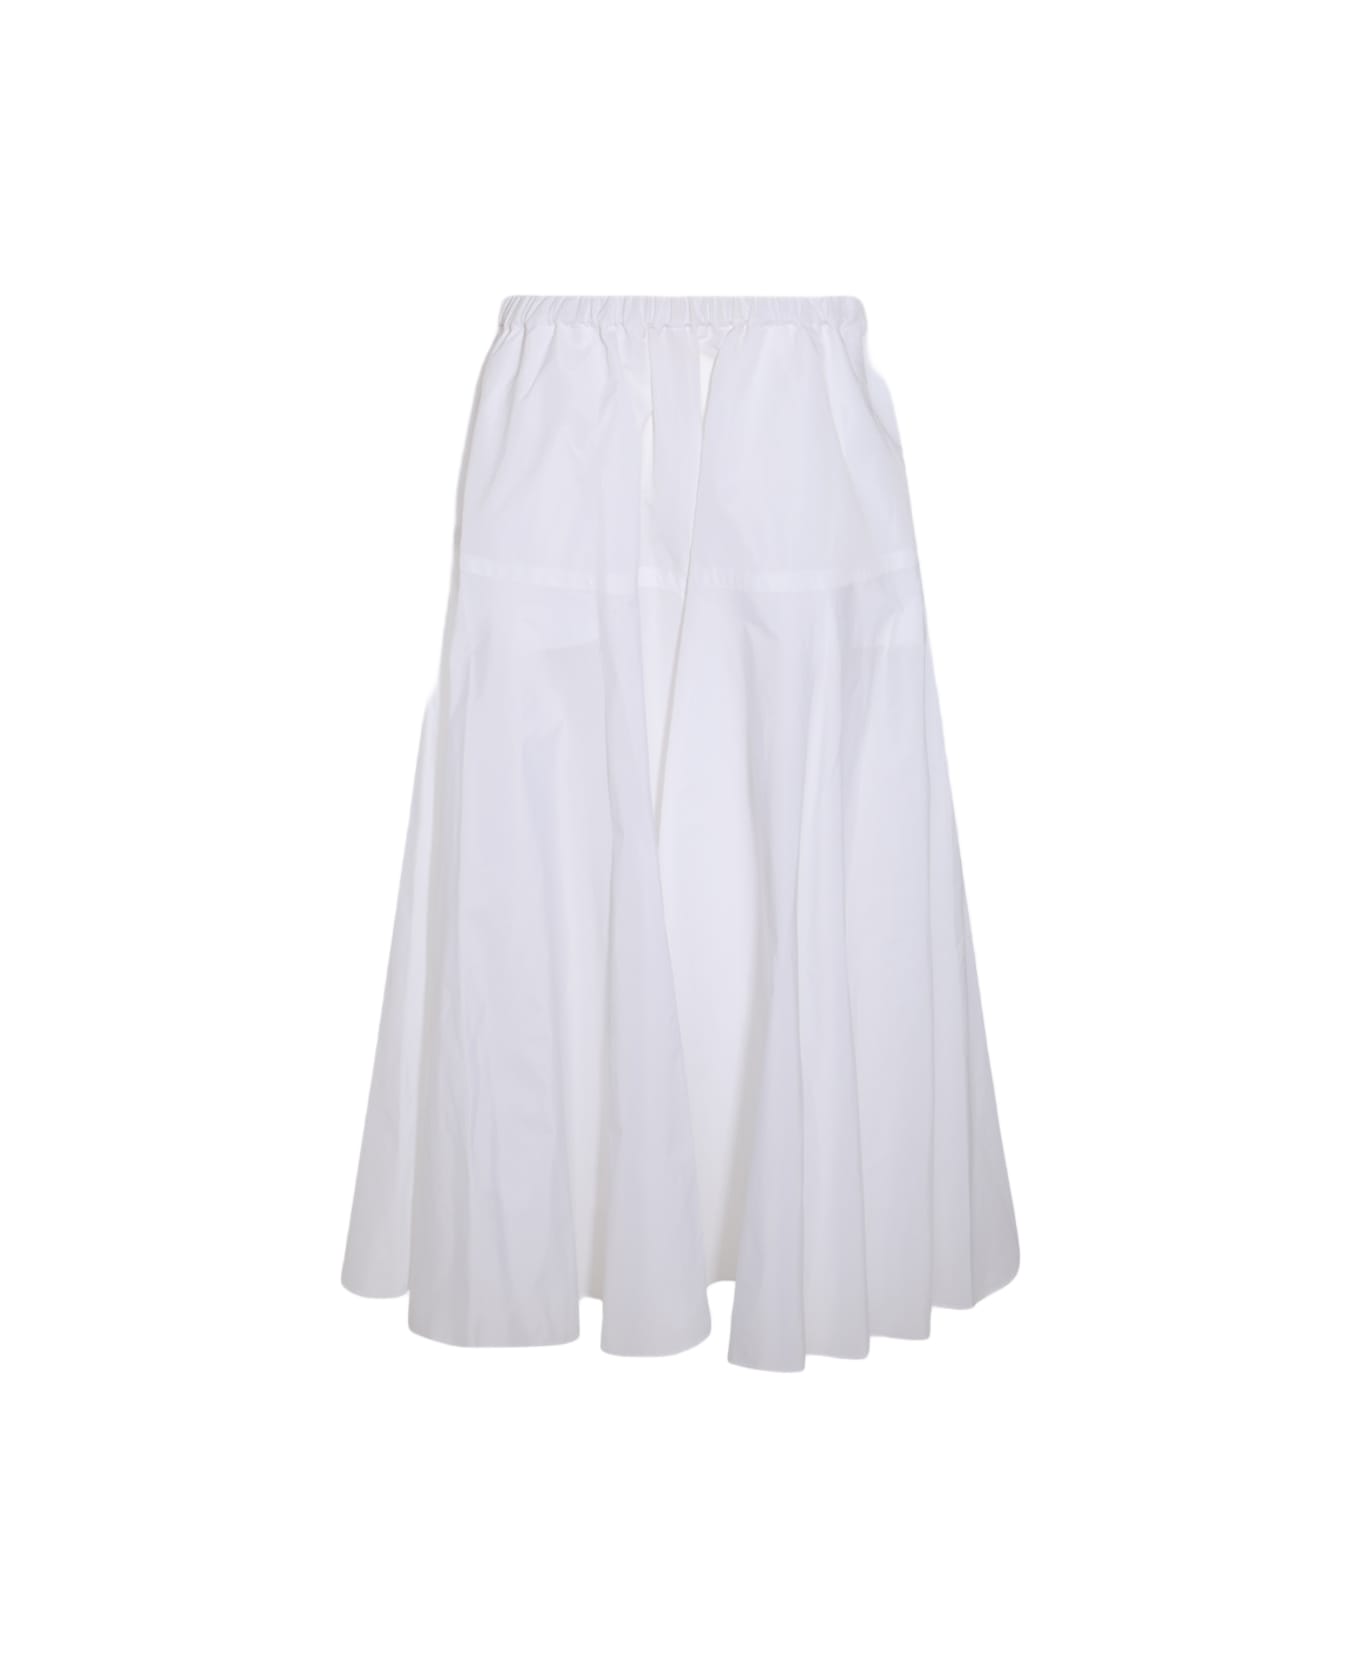 Patou White Skirt - White